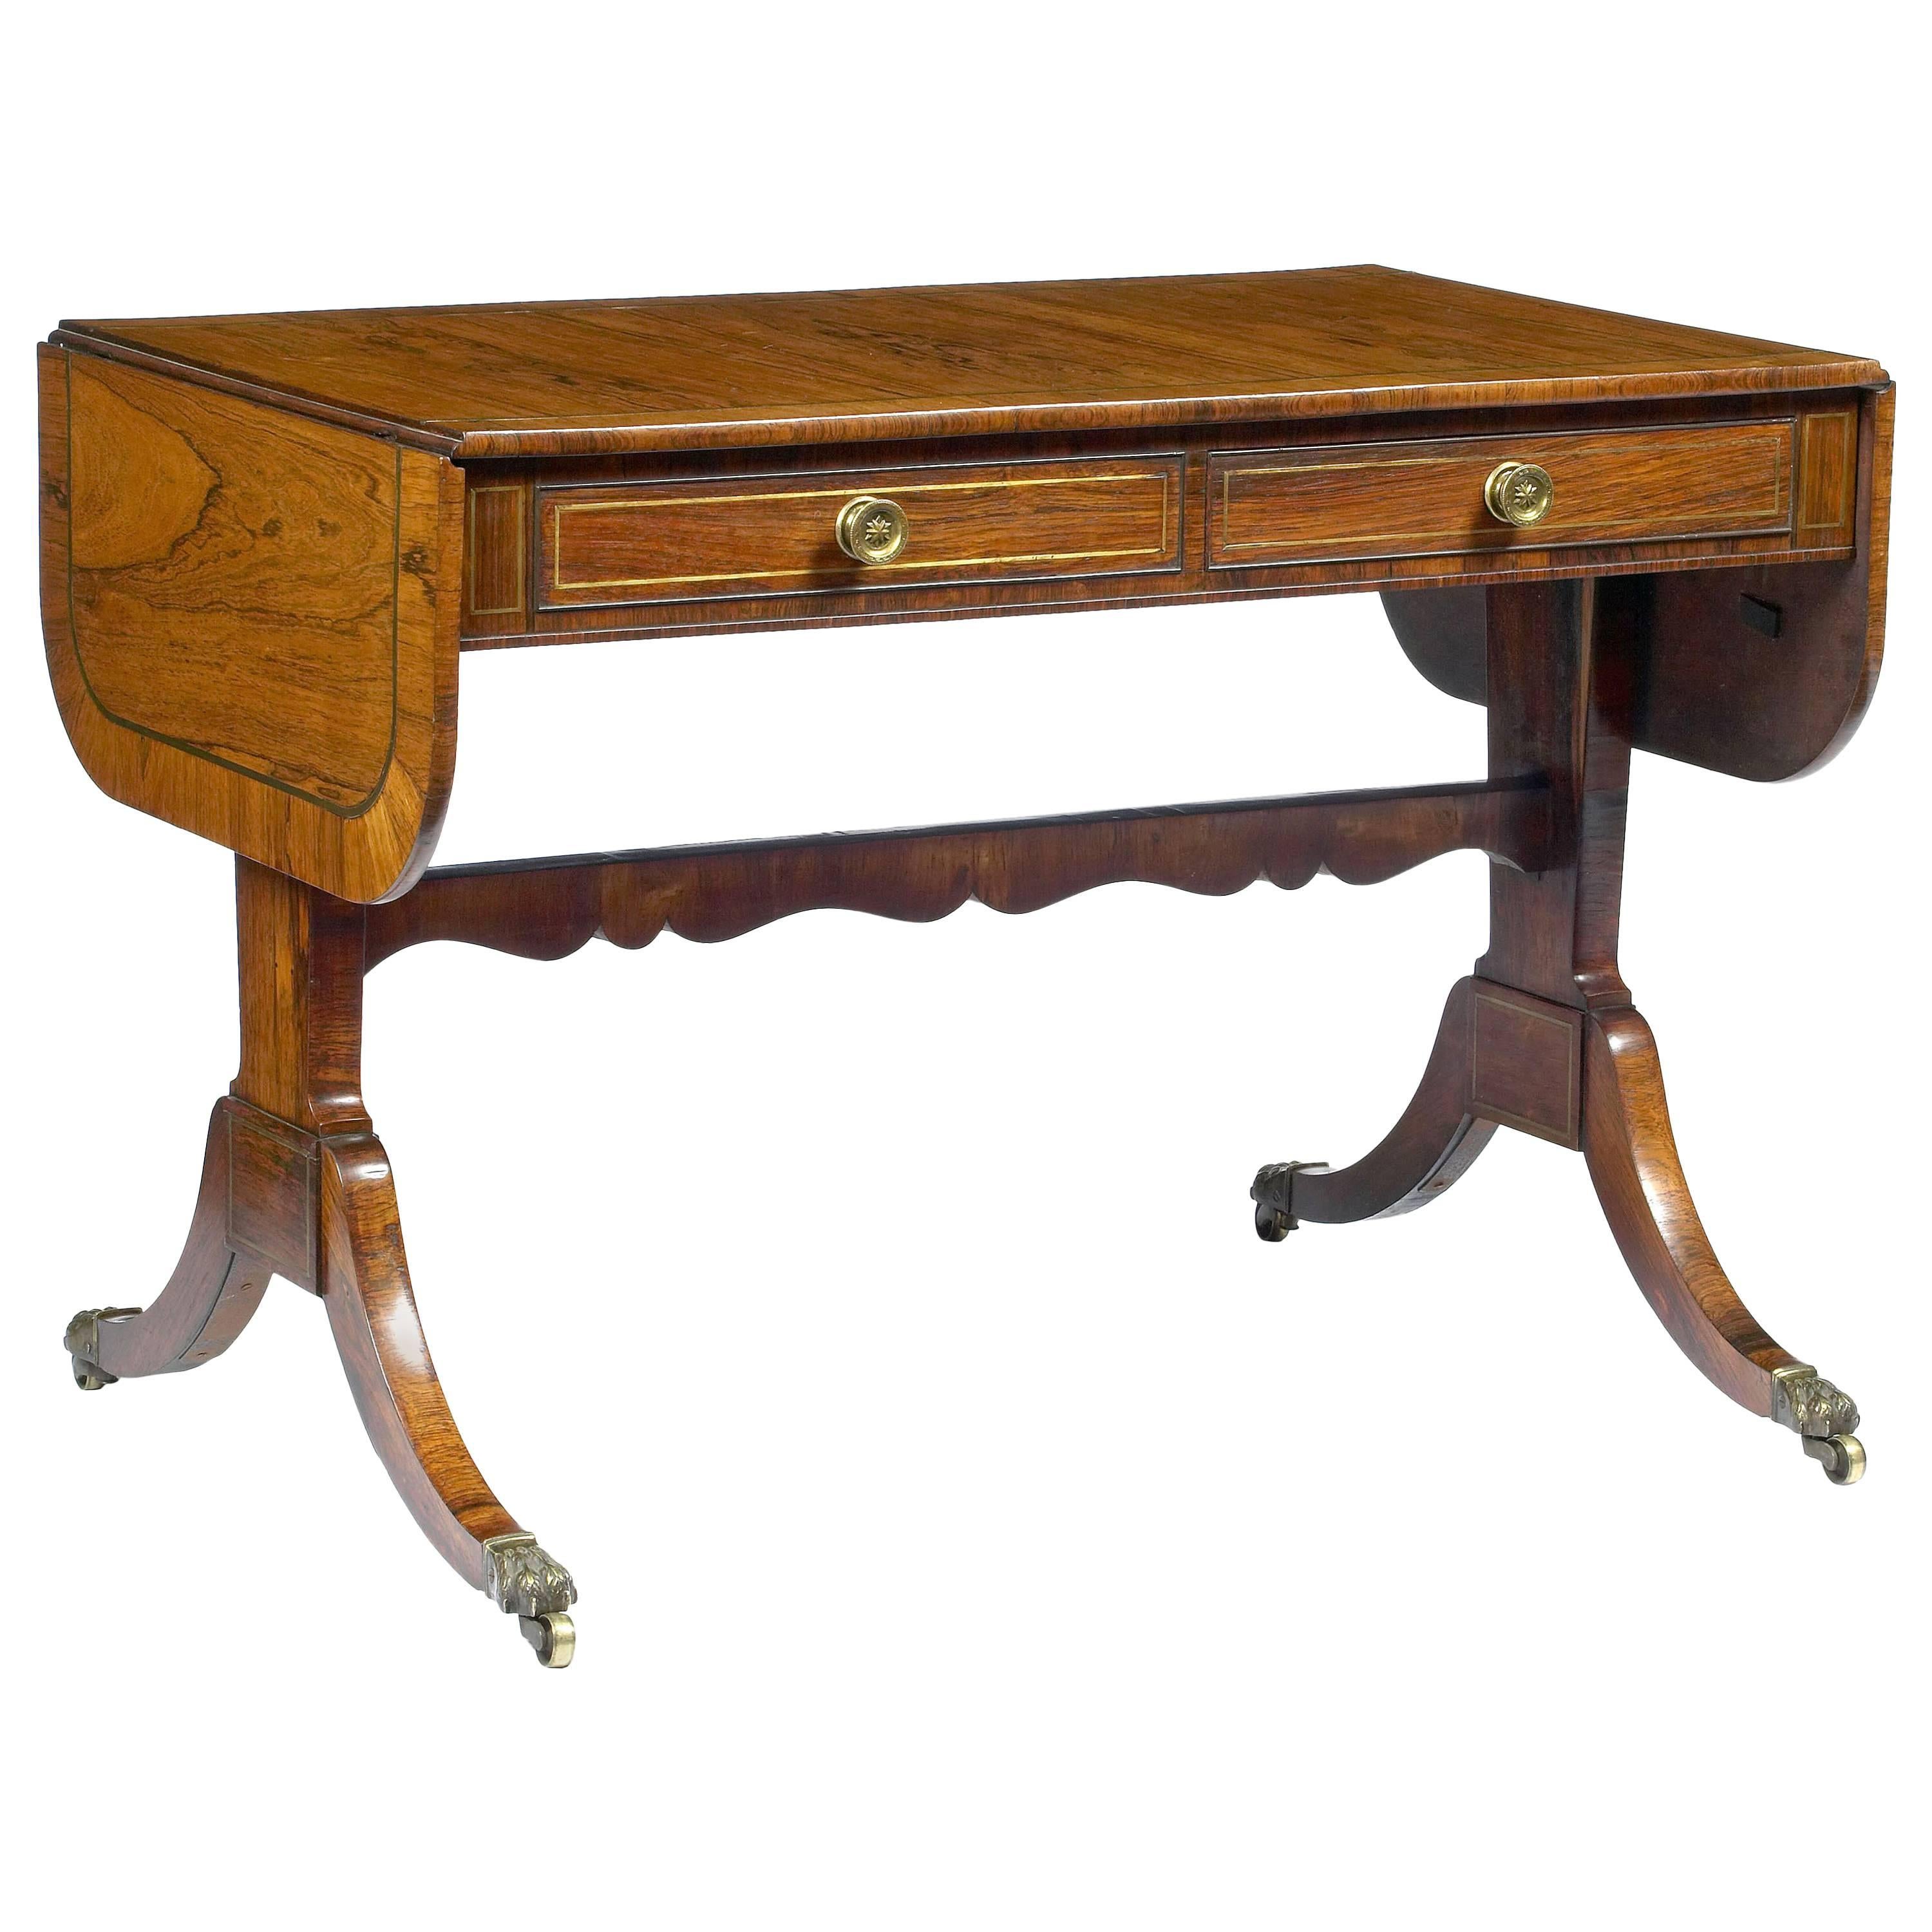 Table de canapé Regency du début du XIXe siècle d'après Thomas Sheraton